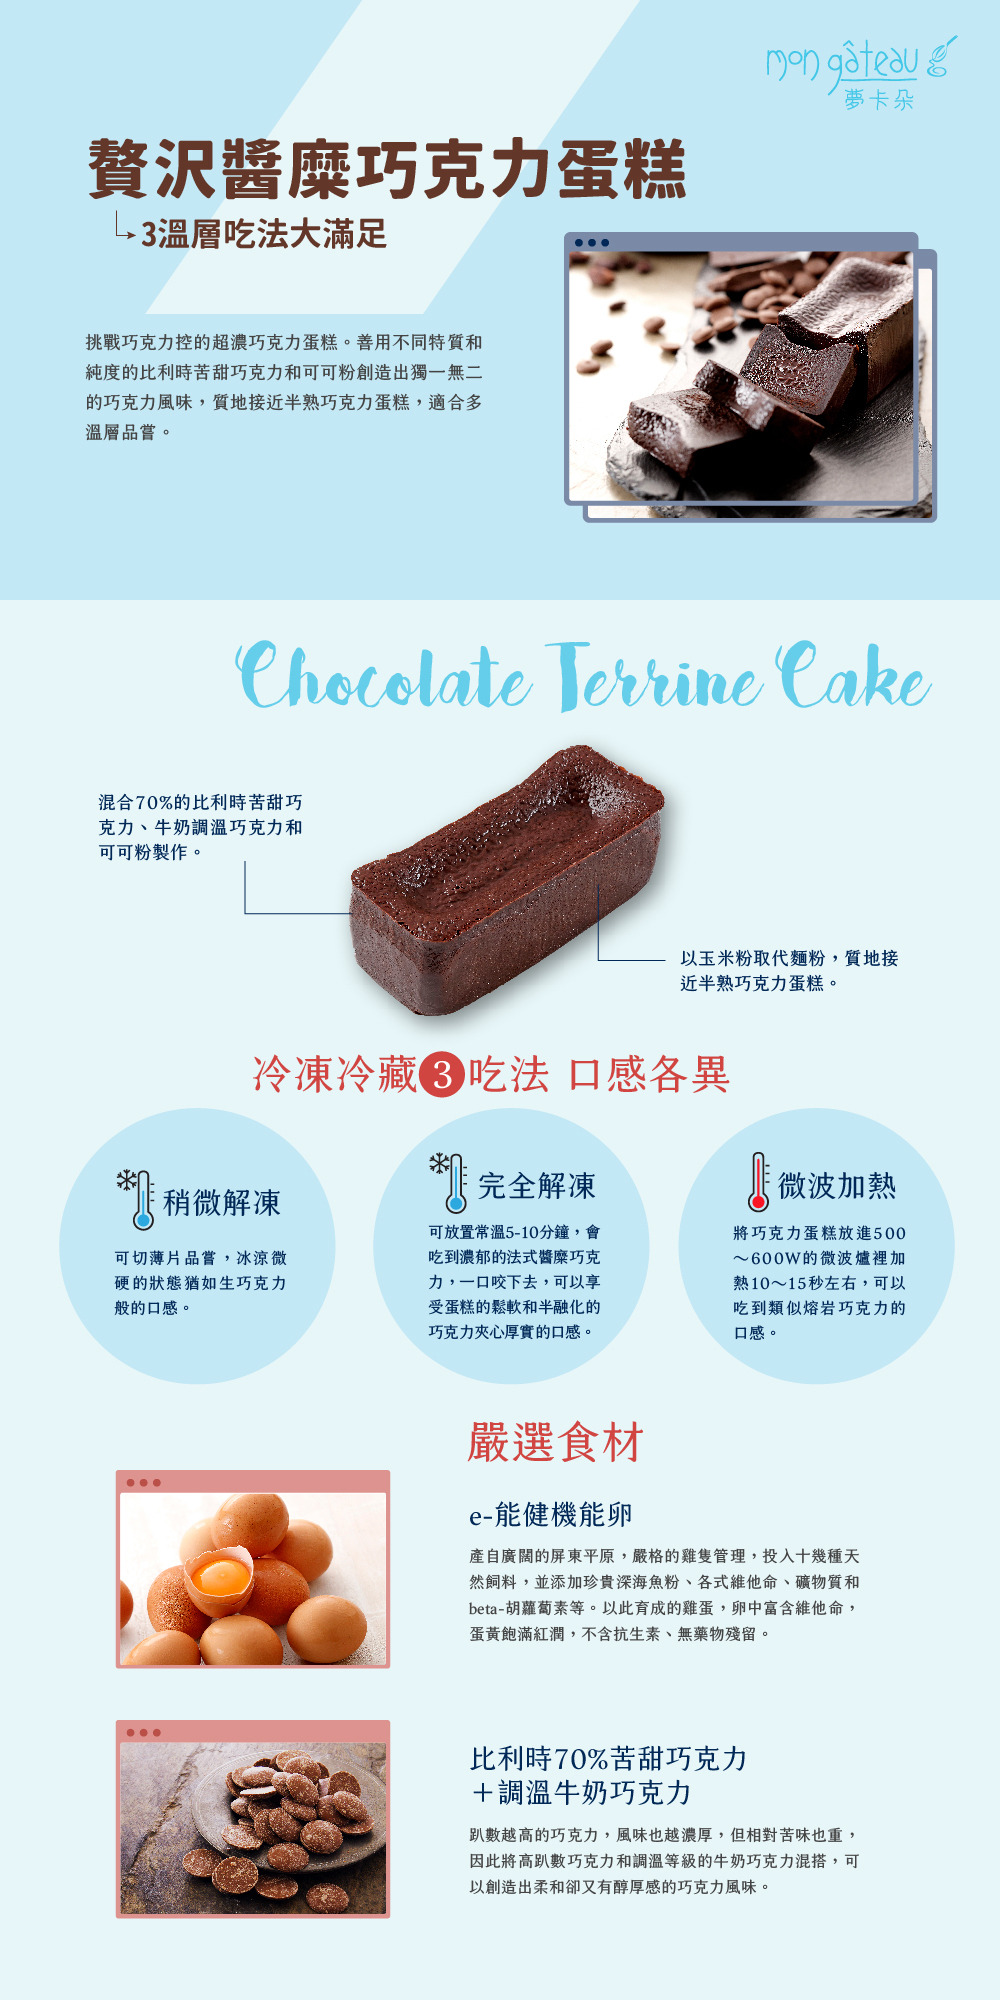 贅沢醬糜巧克力蛋糕產品說明